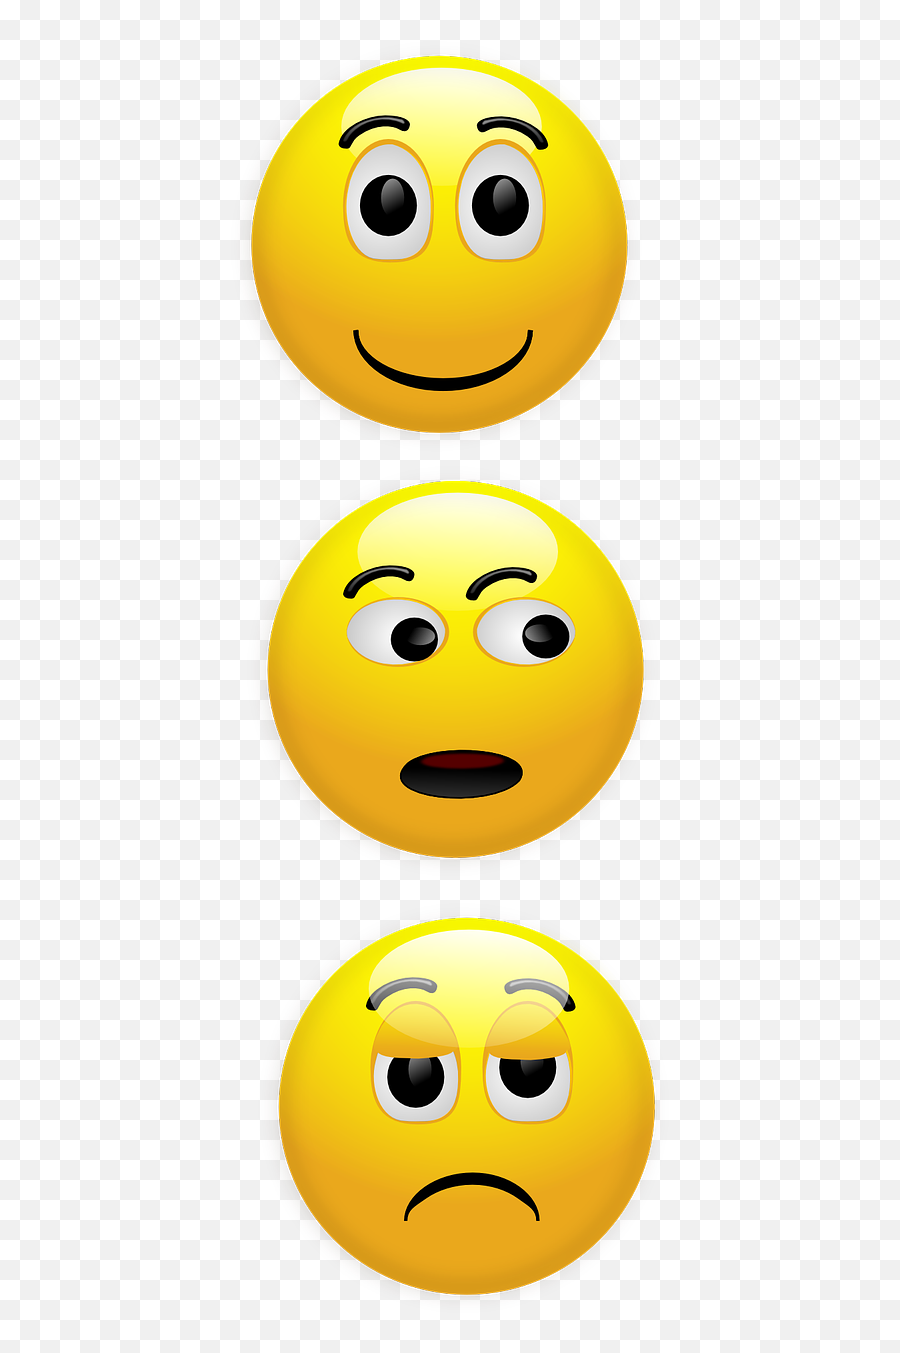 Smiley Happy Unhappy Wondering Looking - Happy Unhappy Emoji,Looking Emoji